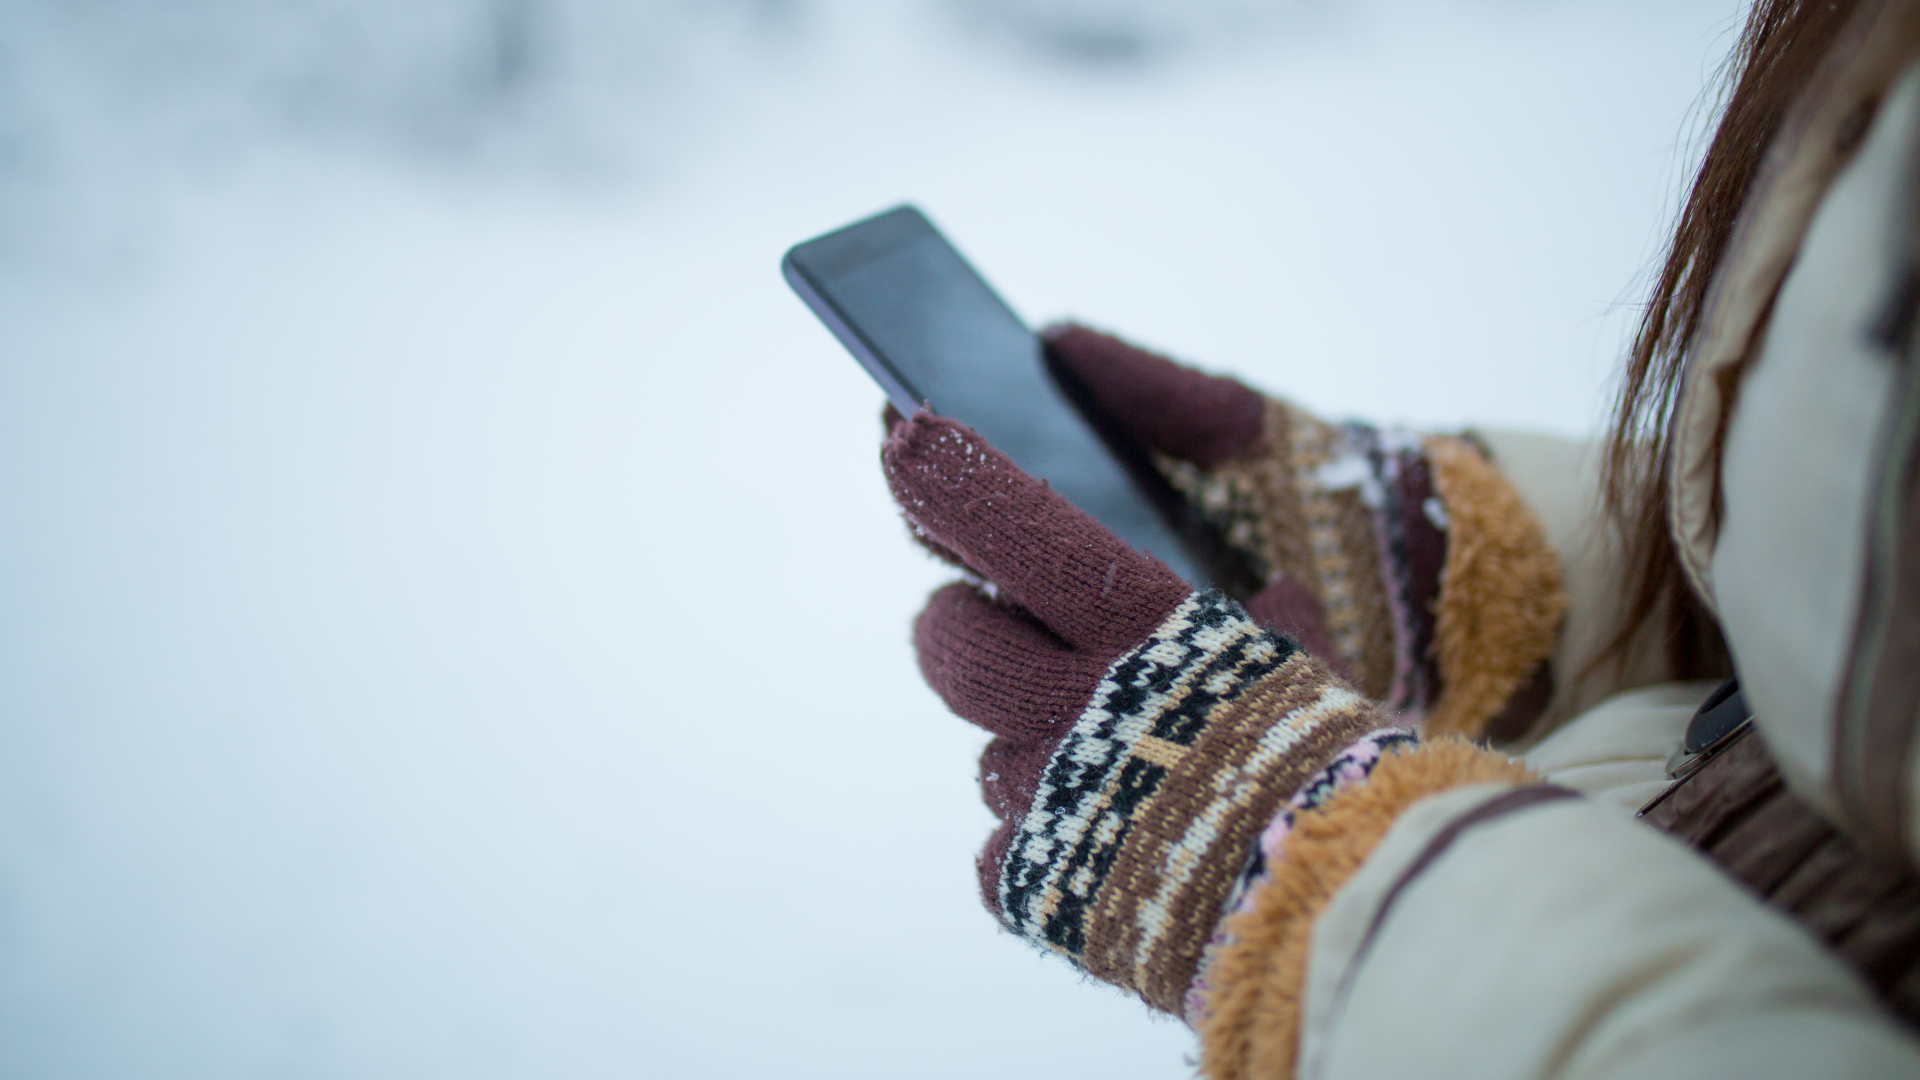 Manos femeninas sosteniendo un celular al aire libre en la nieve.